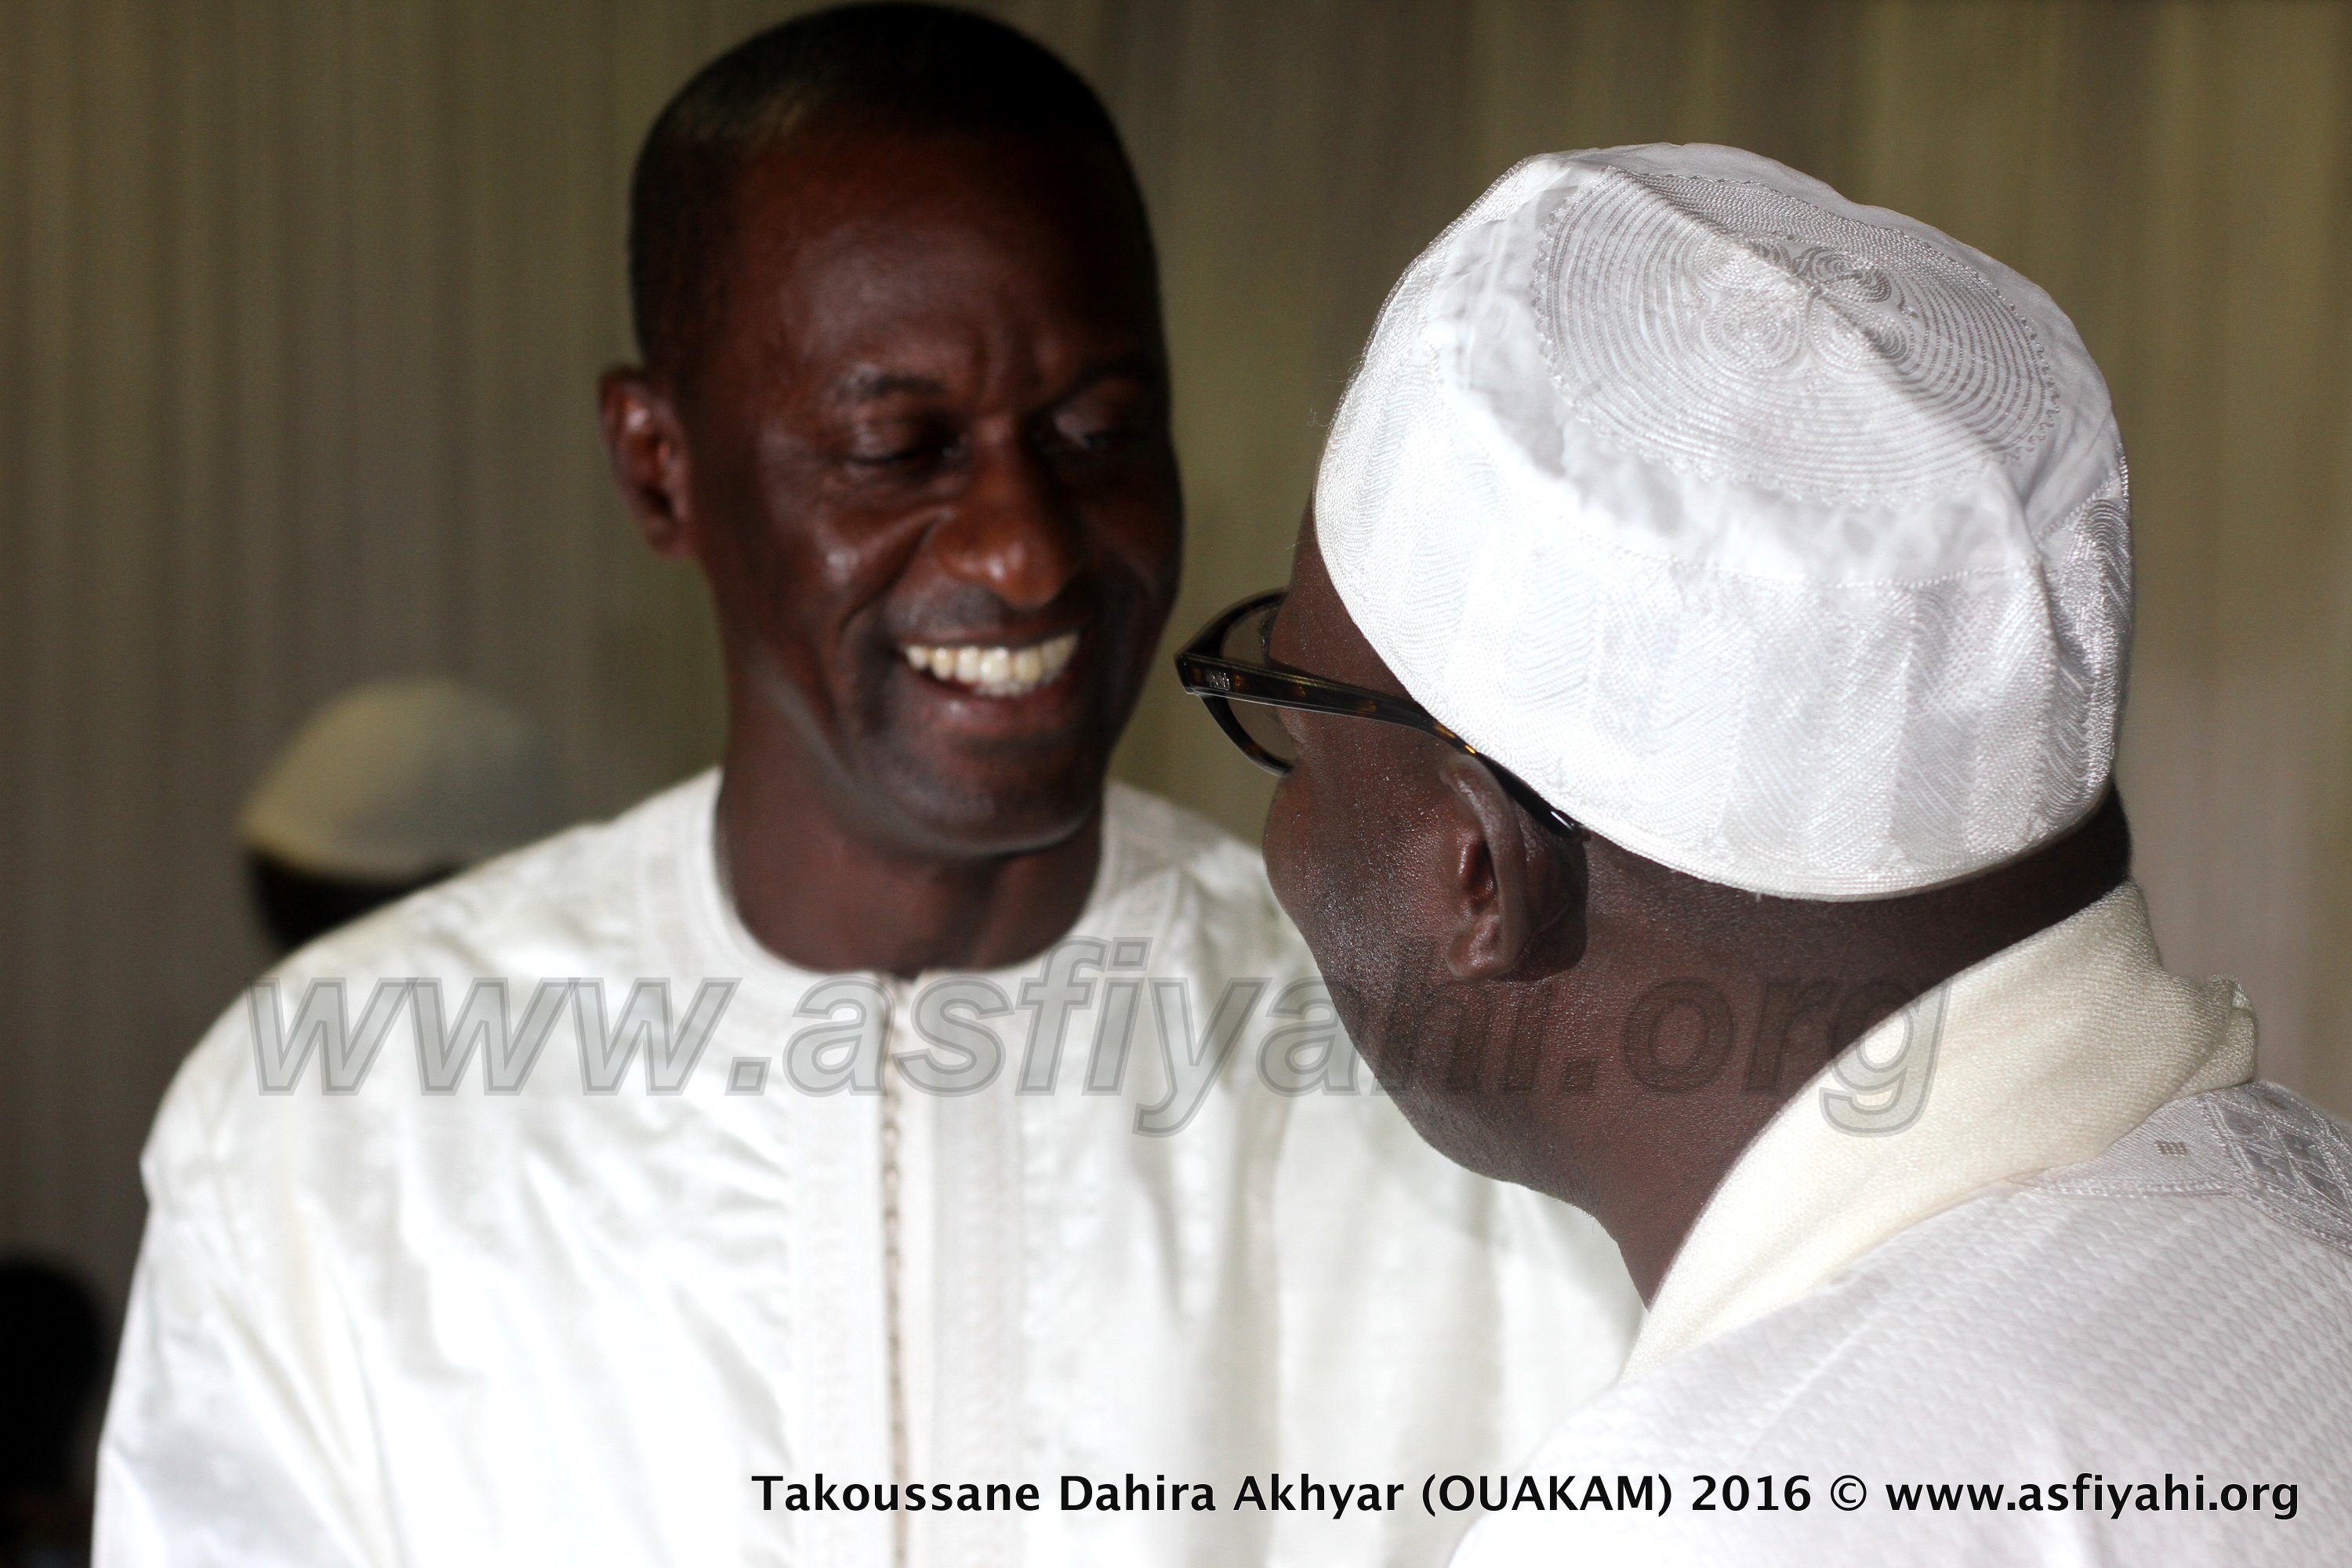 PHOTOS - OUAKAM - Les Images du Takoussane de la Dahira Akhyar, Samedi 6 Février 2016 à la Place Bayé, sous la présidence de Serigne Moustapha Sy Abdou